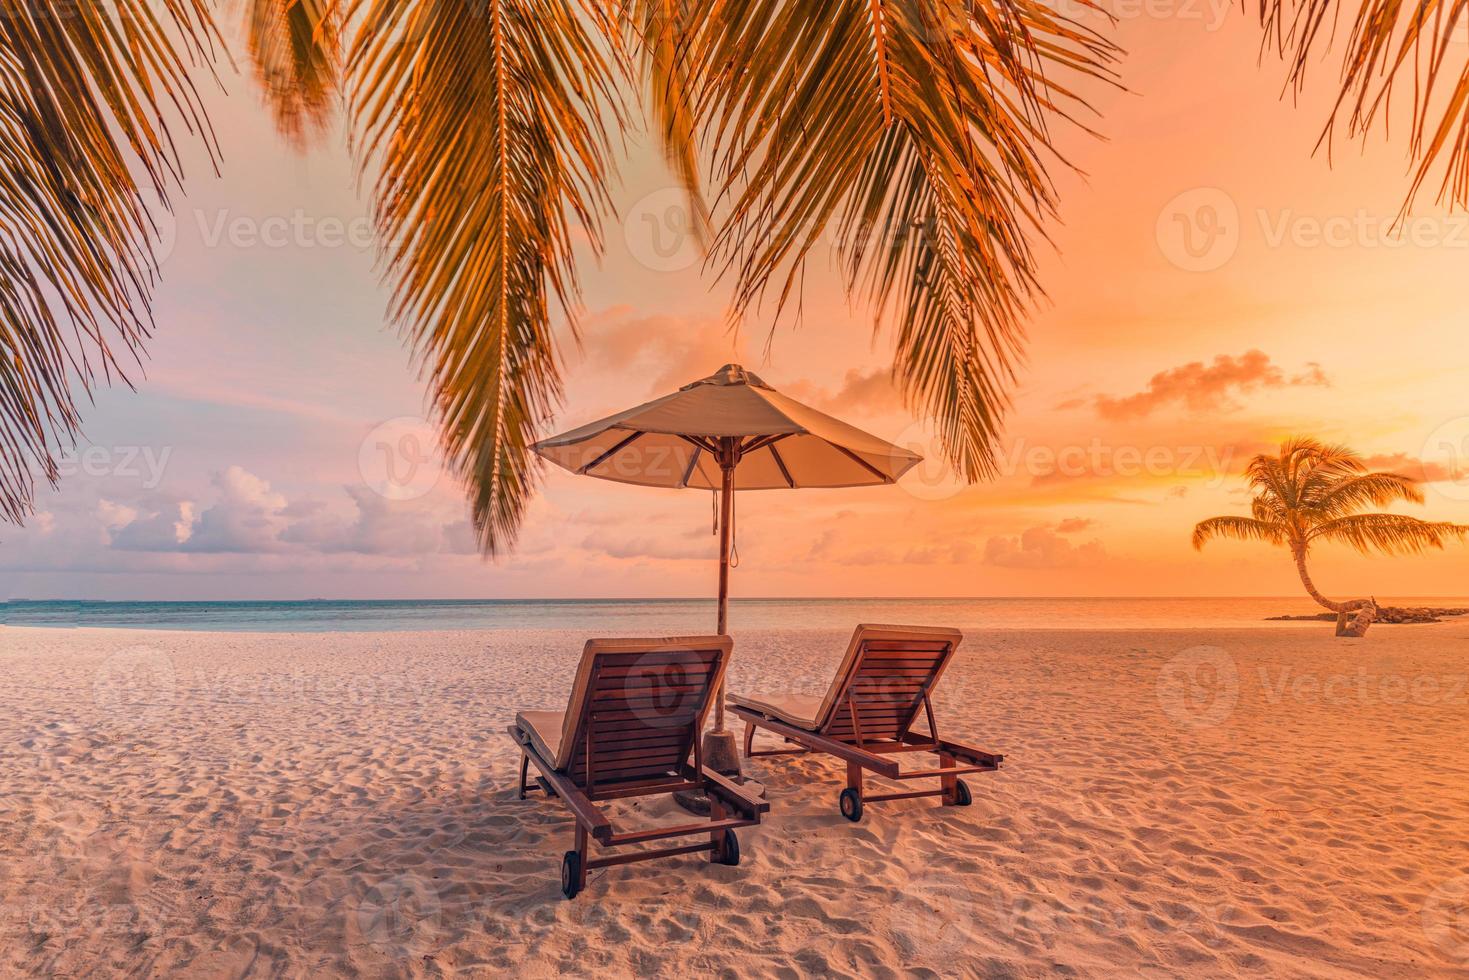 bellissimo scenario del tramonto tropicale, due lettini, lettini, ombrellone sotto la palma. sabbia bianca, vista mare con orizzonte, cielo crepuscolare colorato, calma e relax. hotel ispiratore del resort sulla spiaggia foto